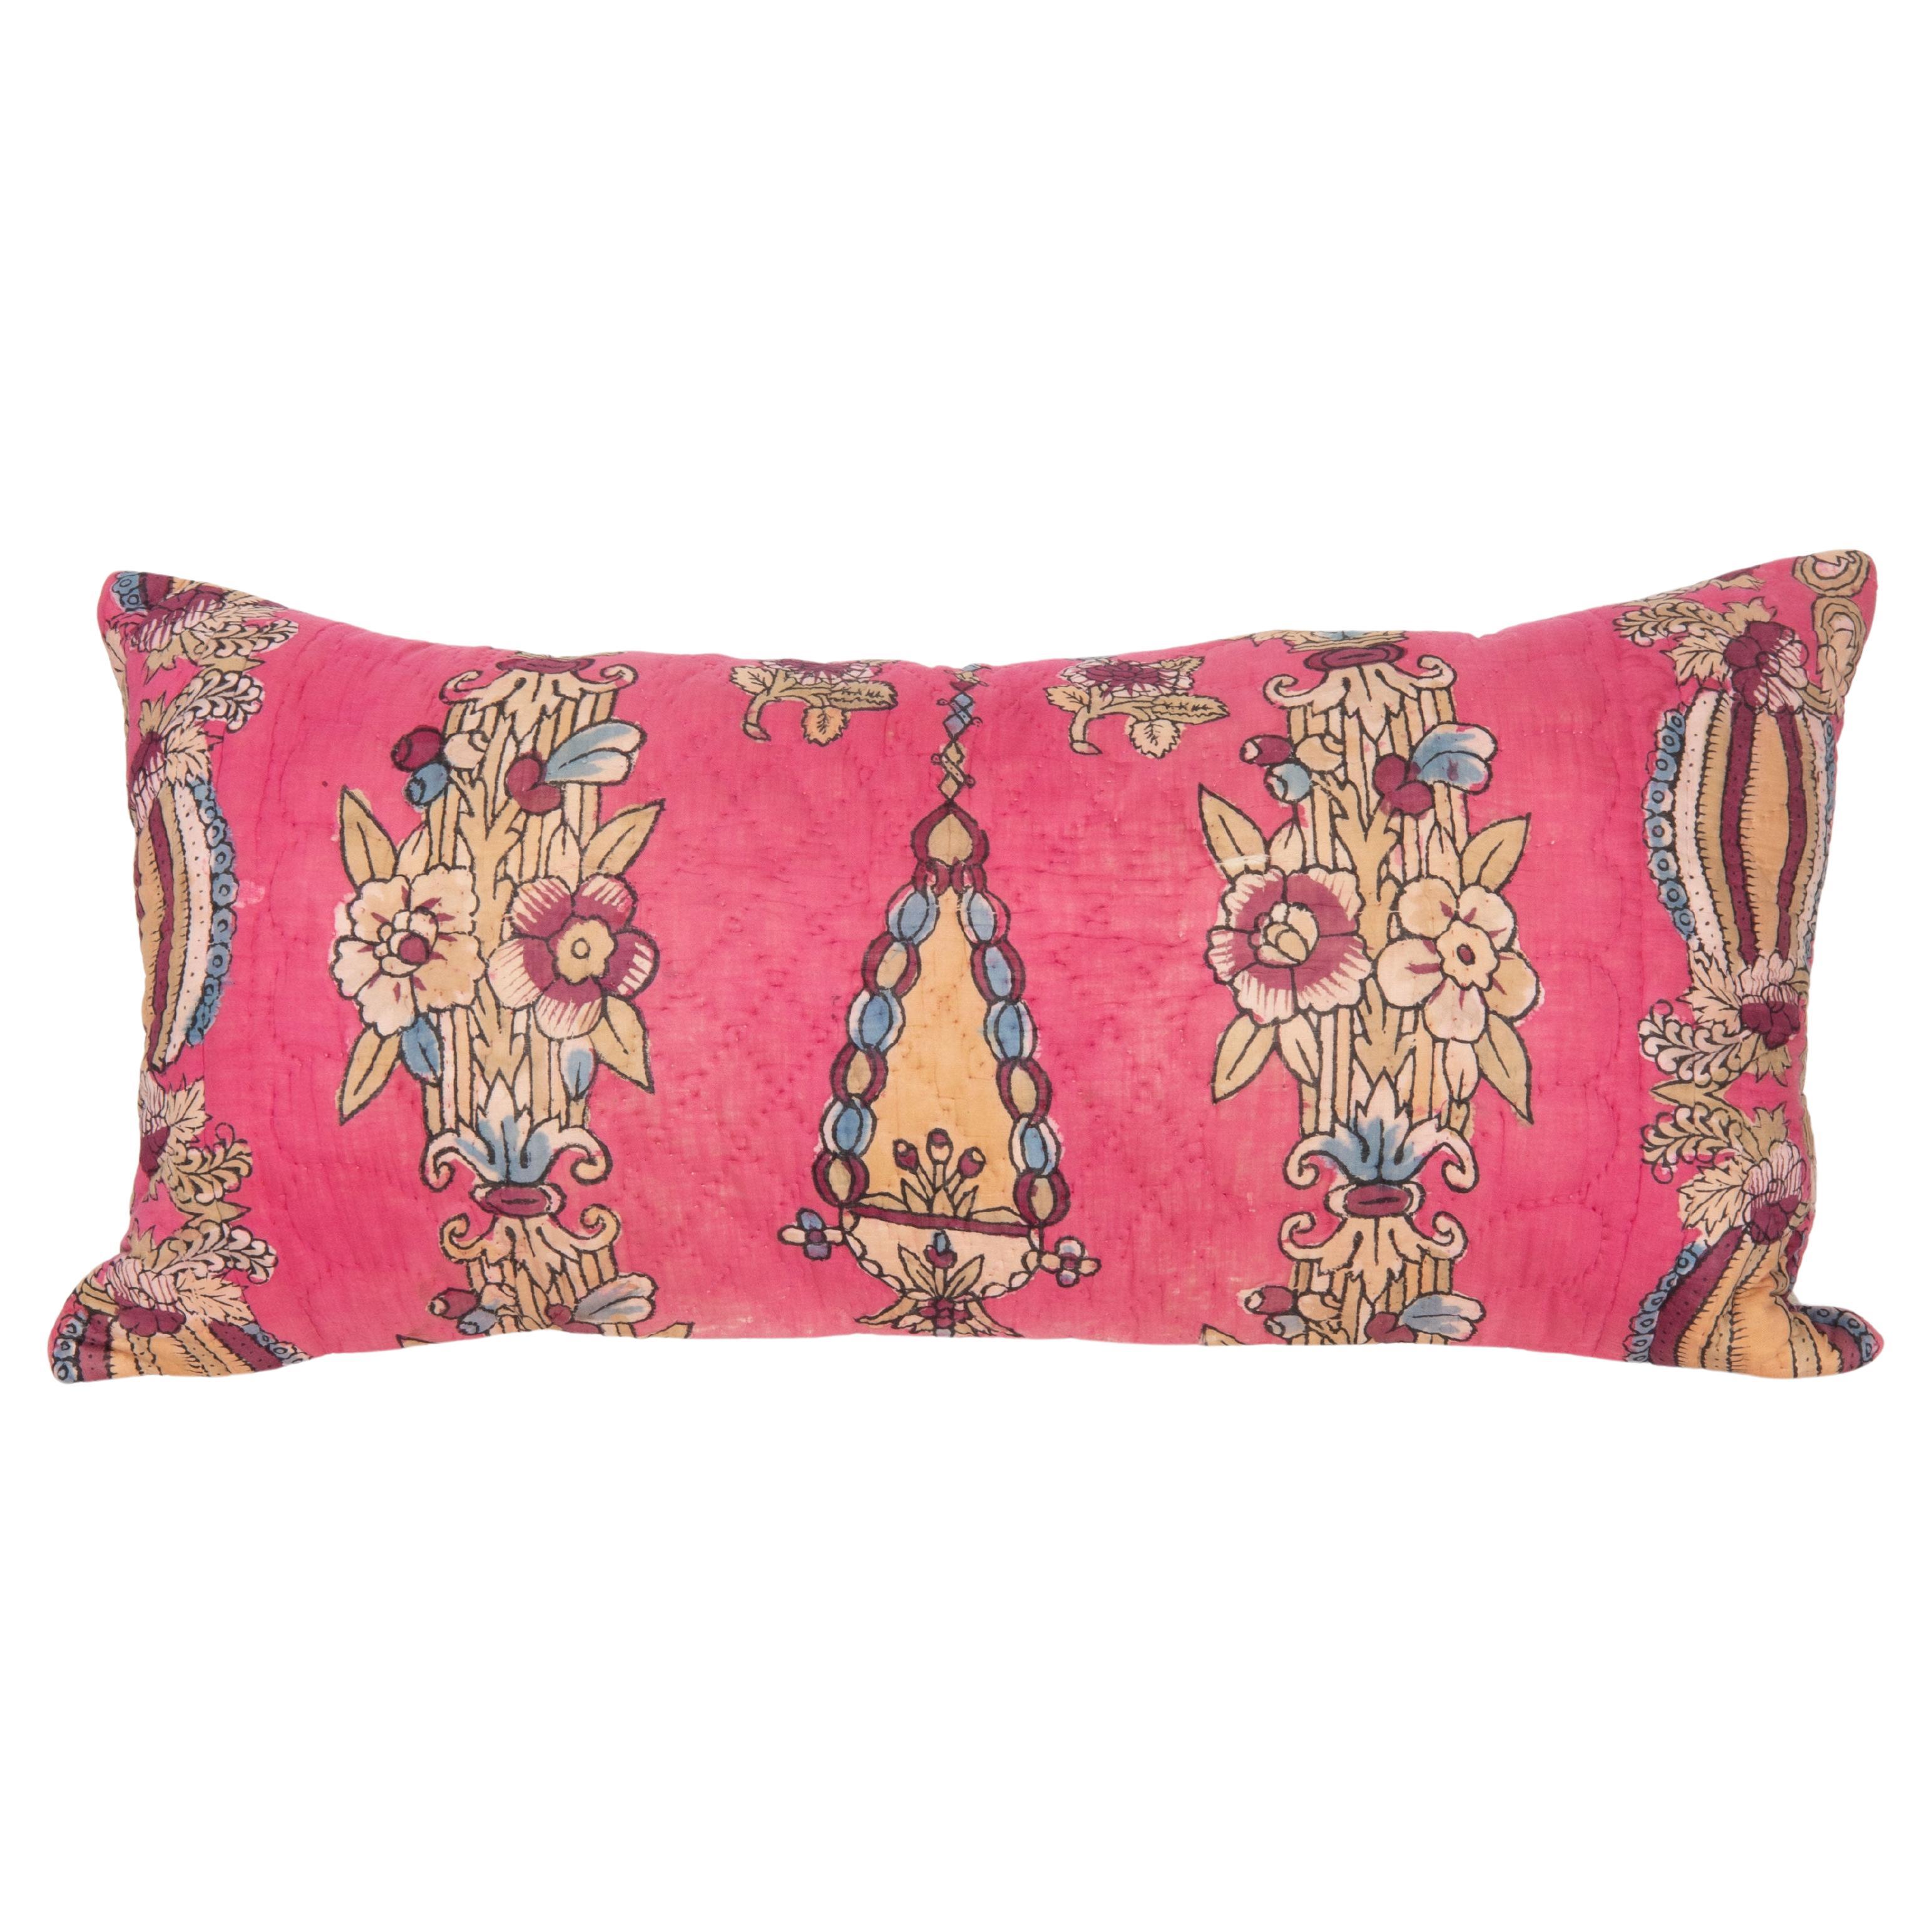 Taie d'oreiller réalisée à partir d'un quilt anatolien du milieu du 20e siècle